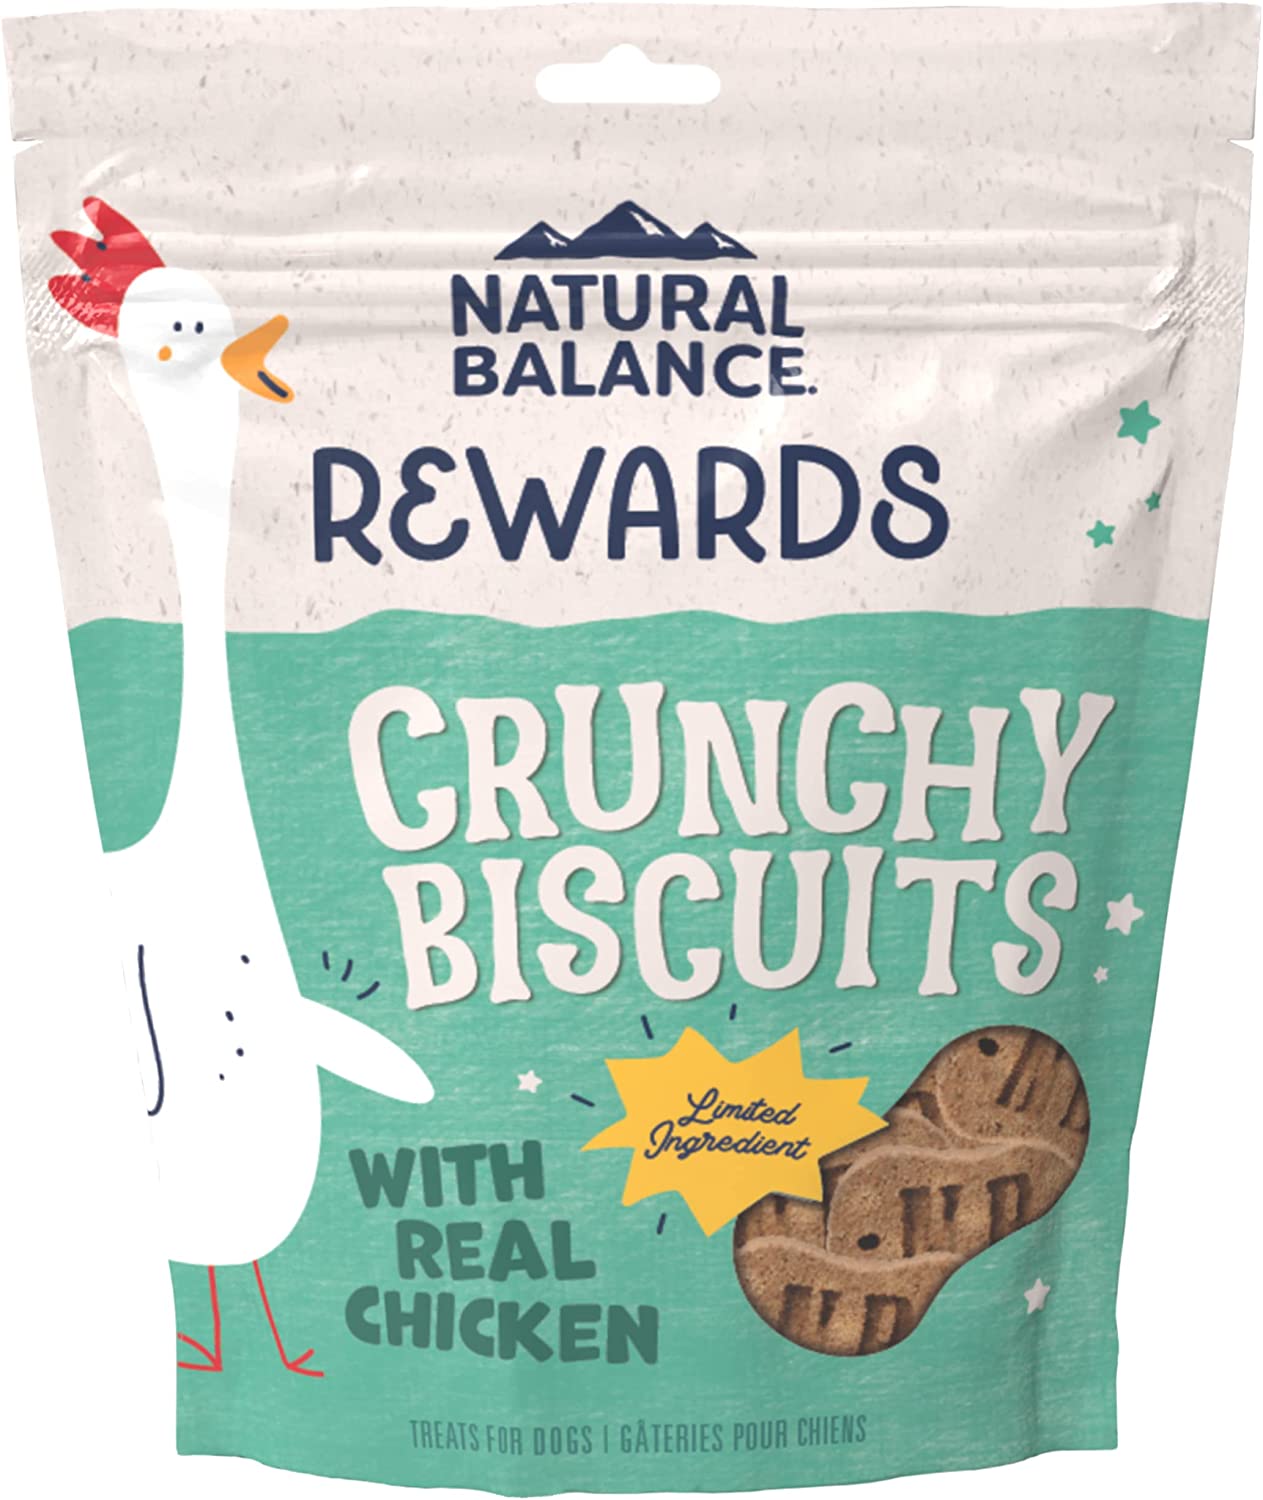 Natural Balance Original Biscuits Chicken